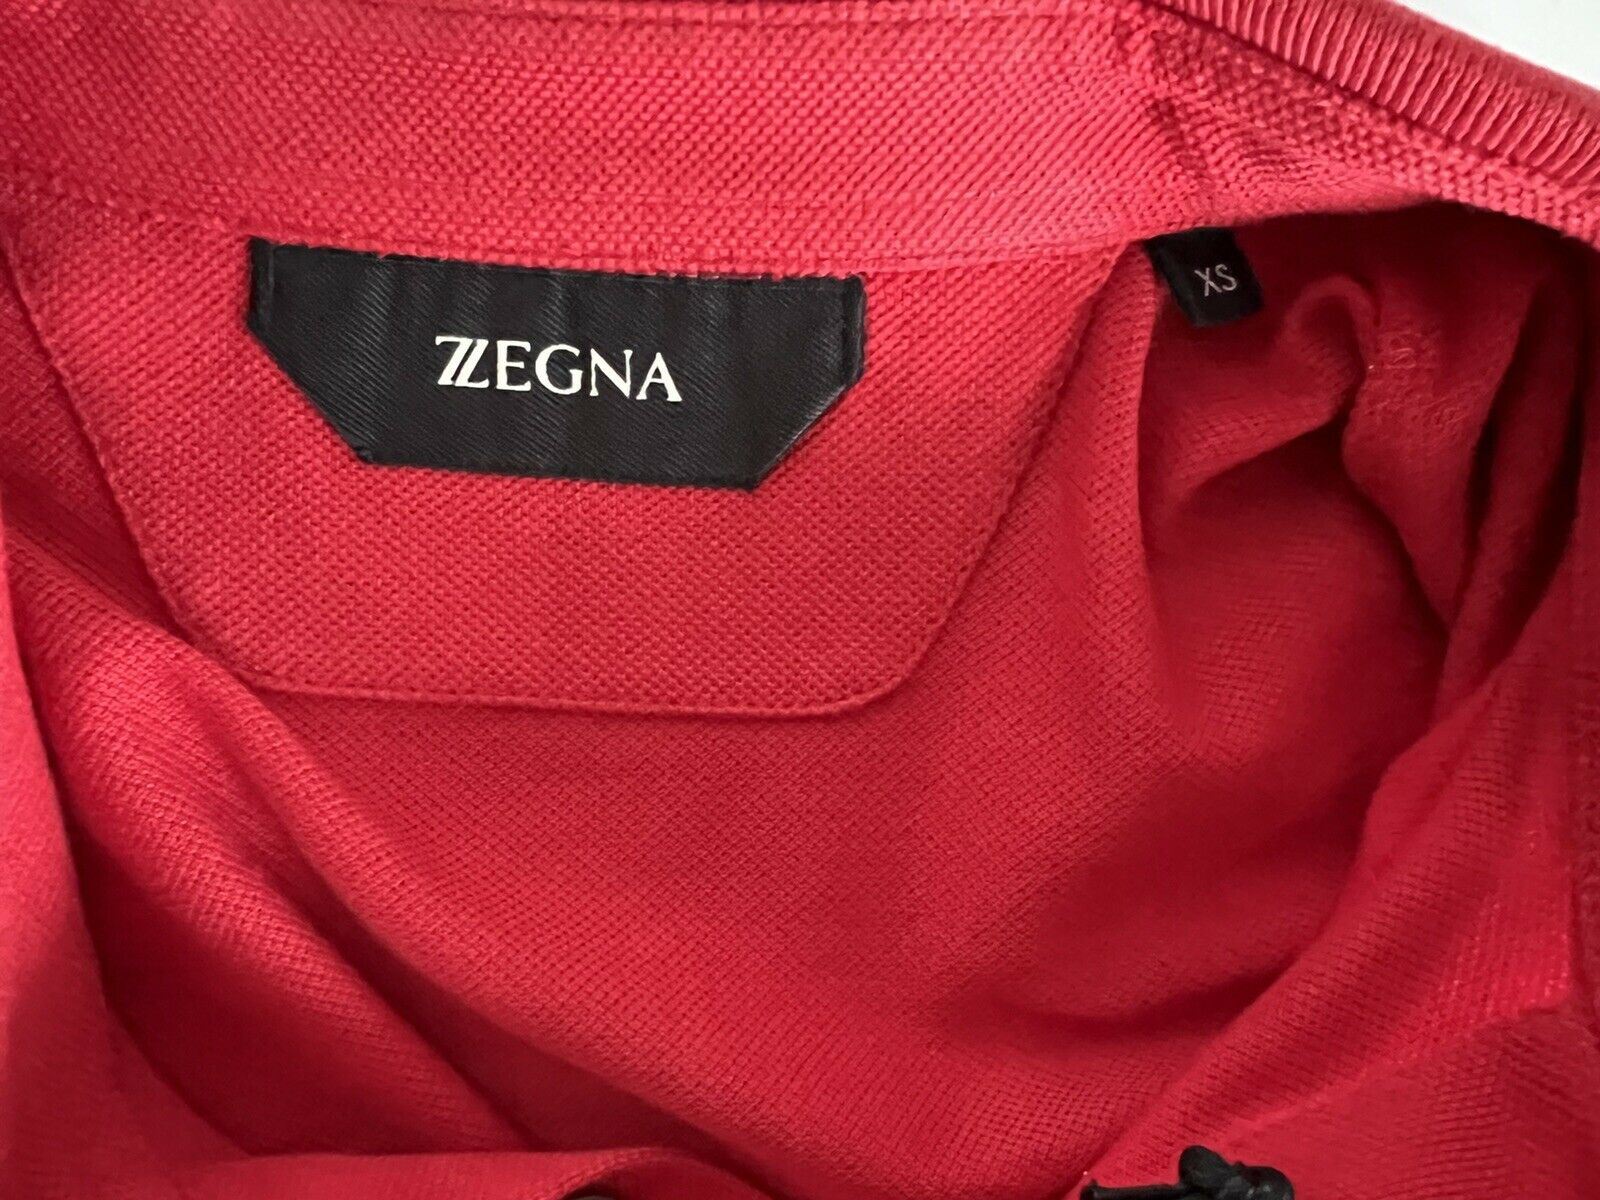 Neu mit Etikett: 375 $ ZEGNA Baumwoll-Poloshirt mit Hemdärmeln Rot XS ZZF600